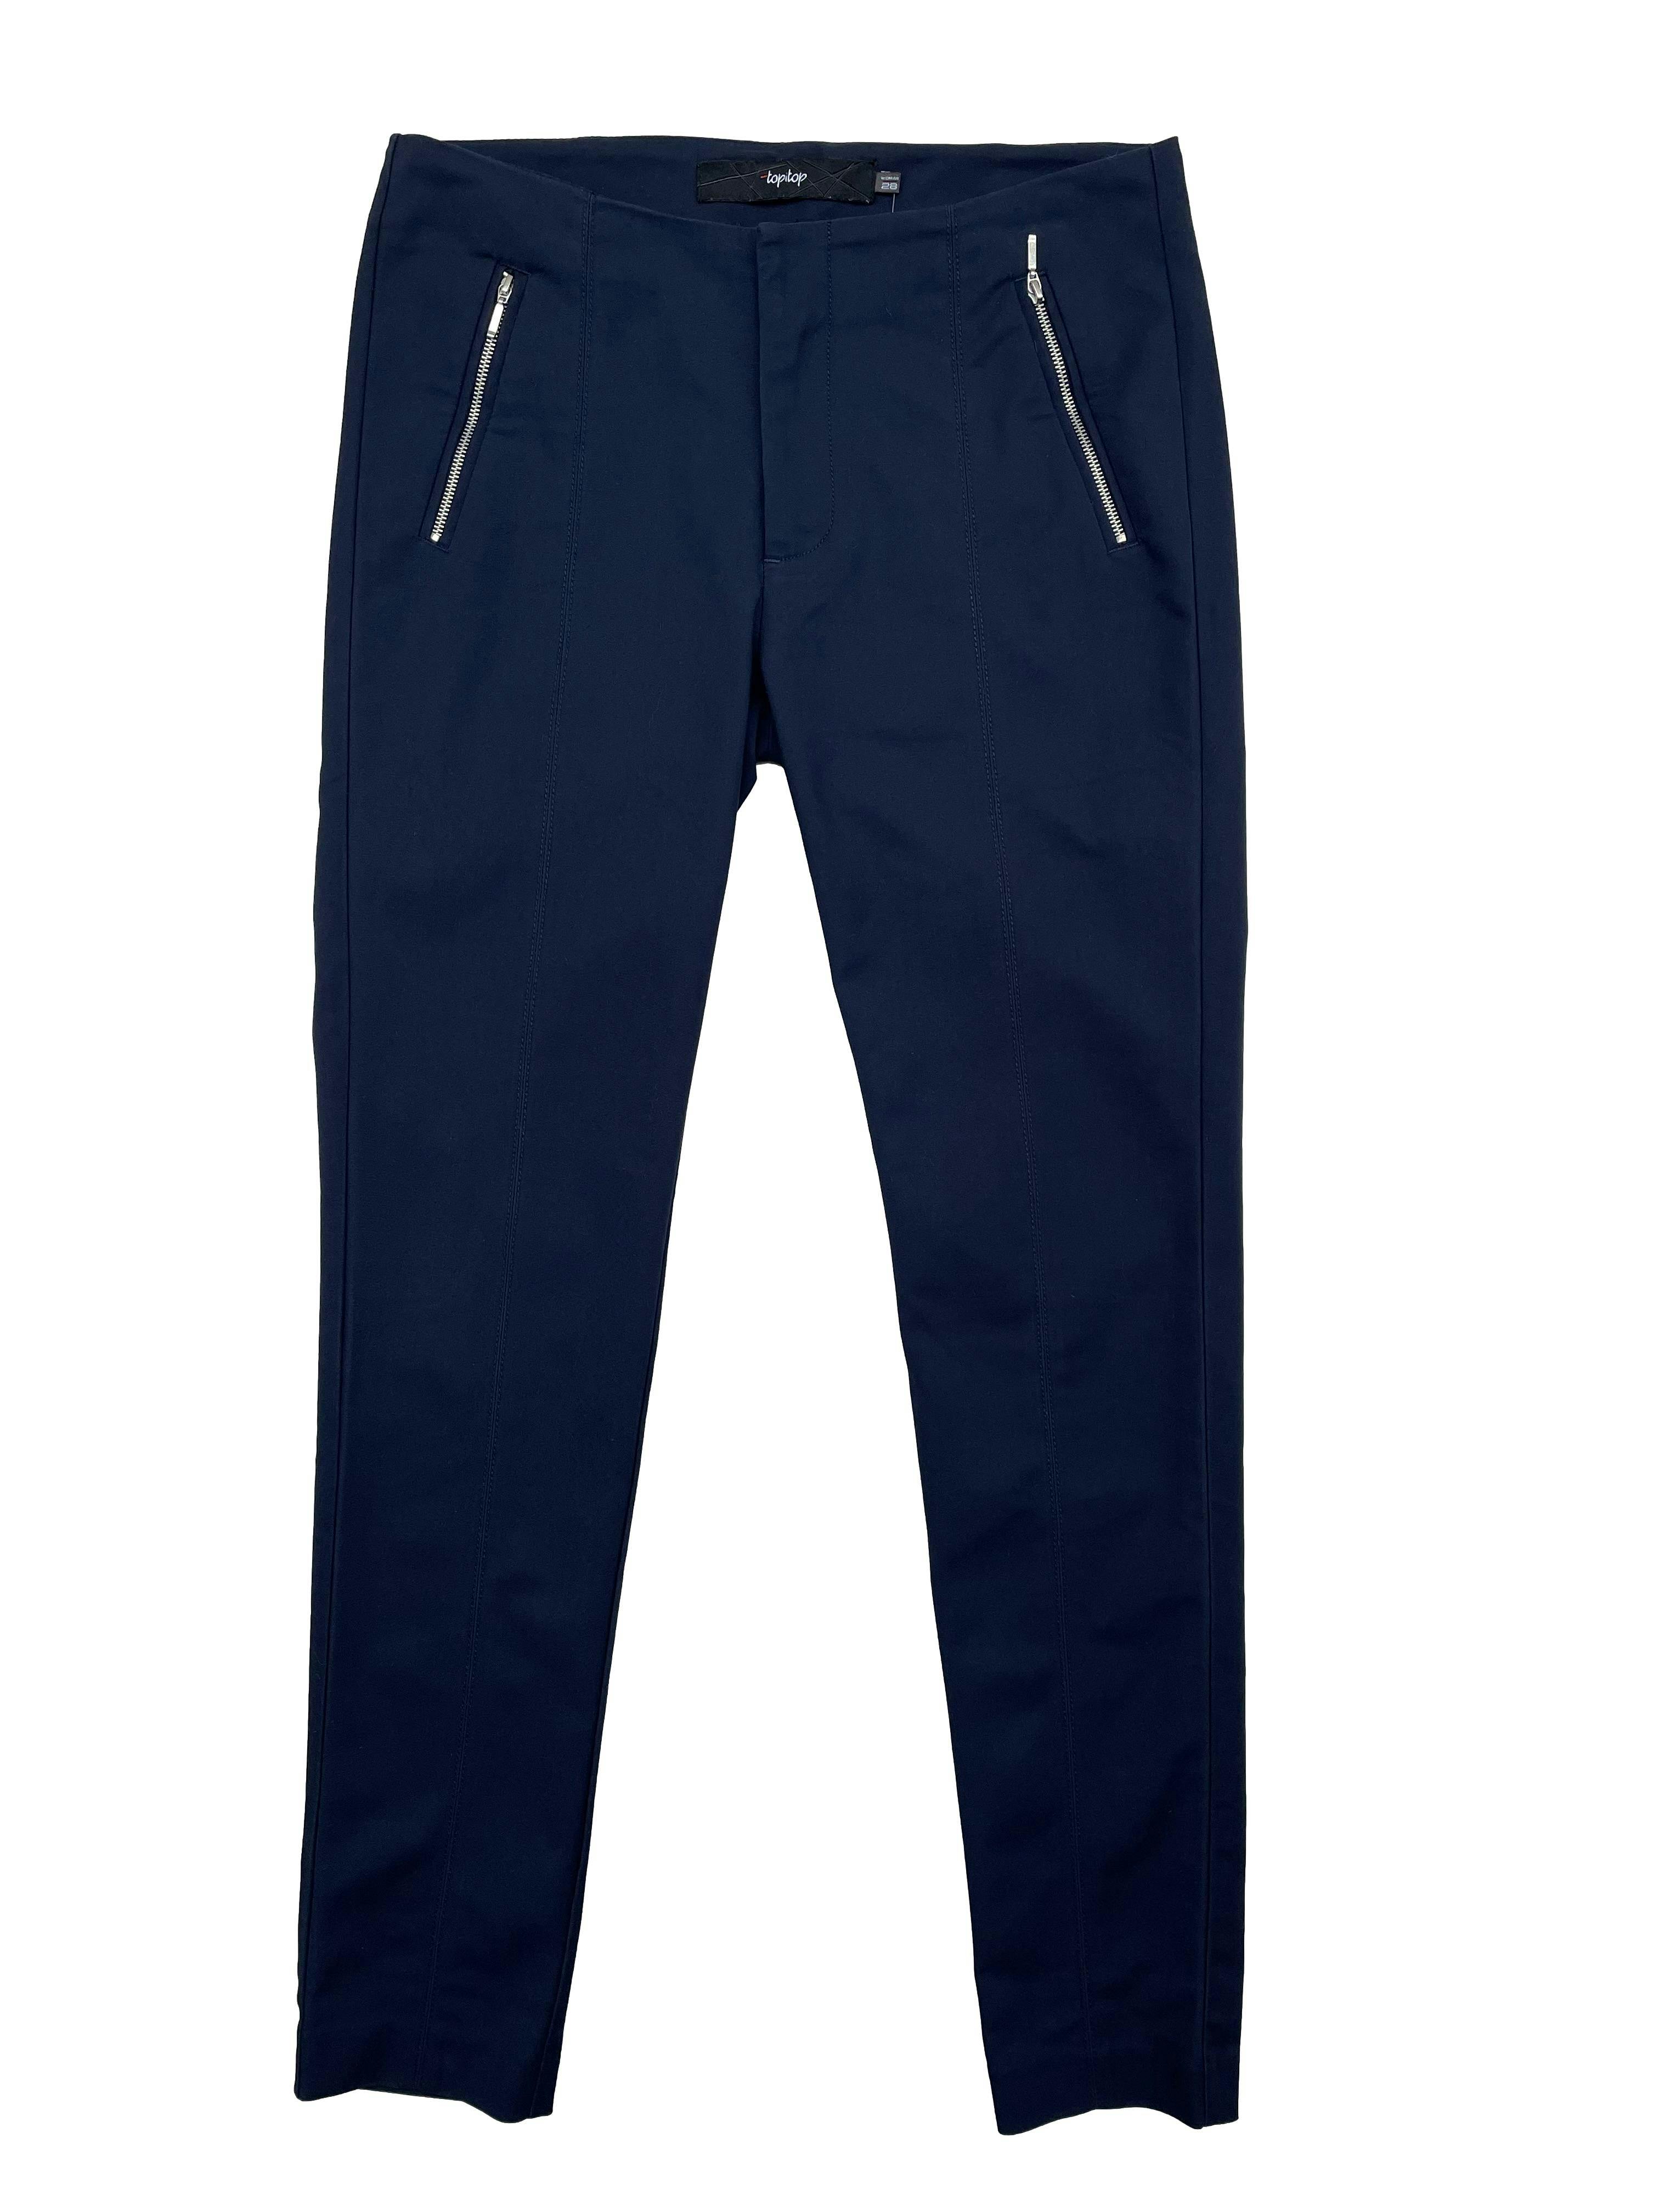 Pantalón slim fit Topitop azul marino con aplicación de cierres y falsos bolsillos posteriores. Cintura 76cm, Largo 97cm.